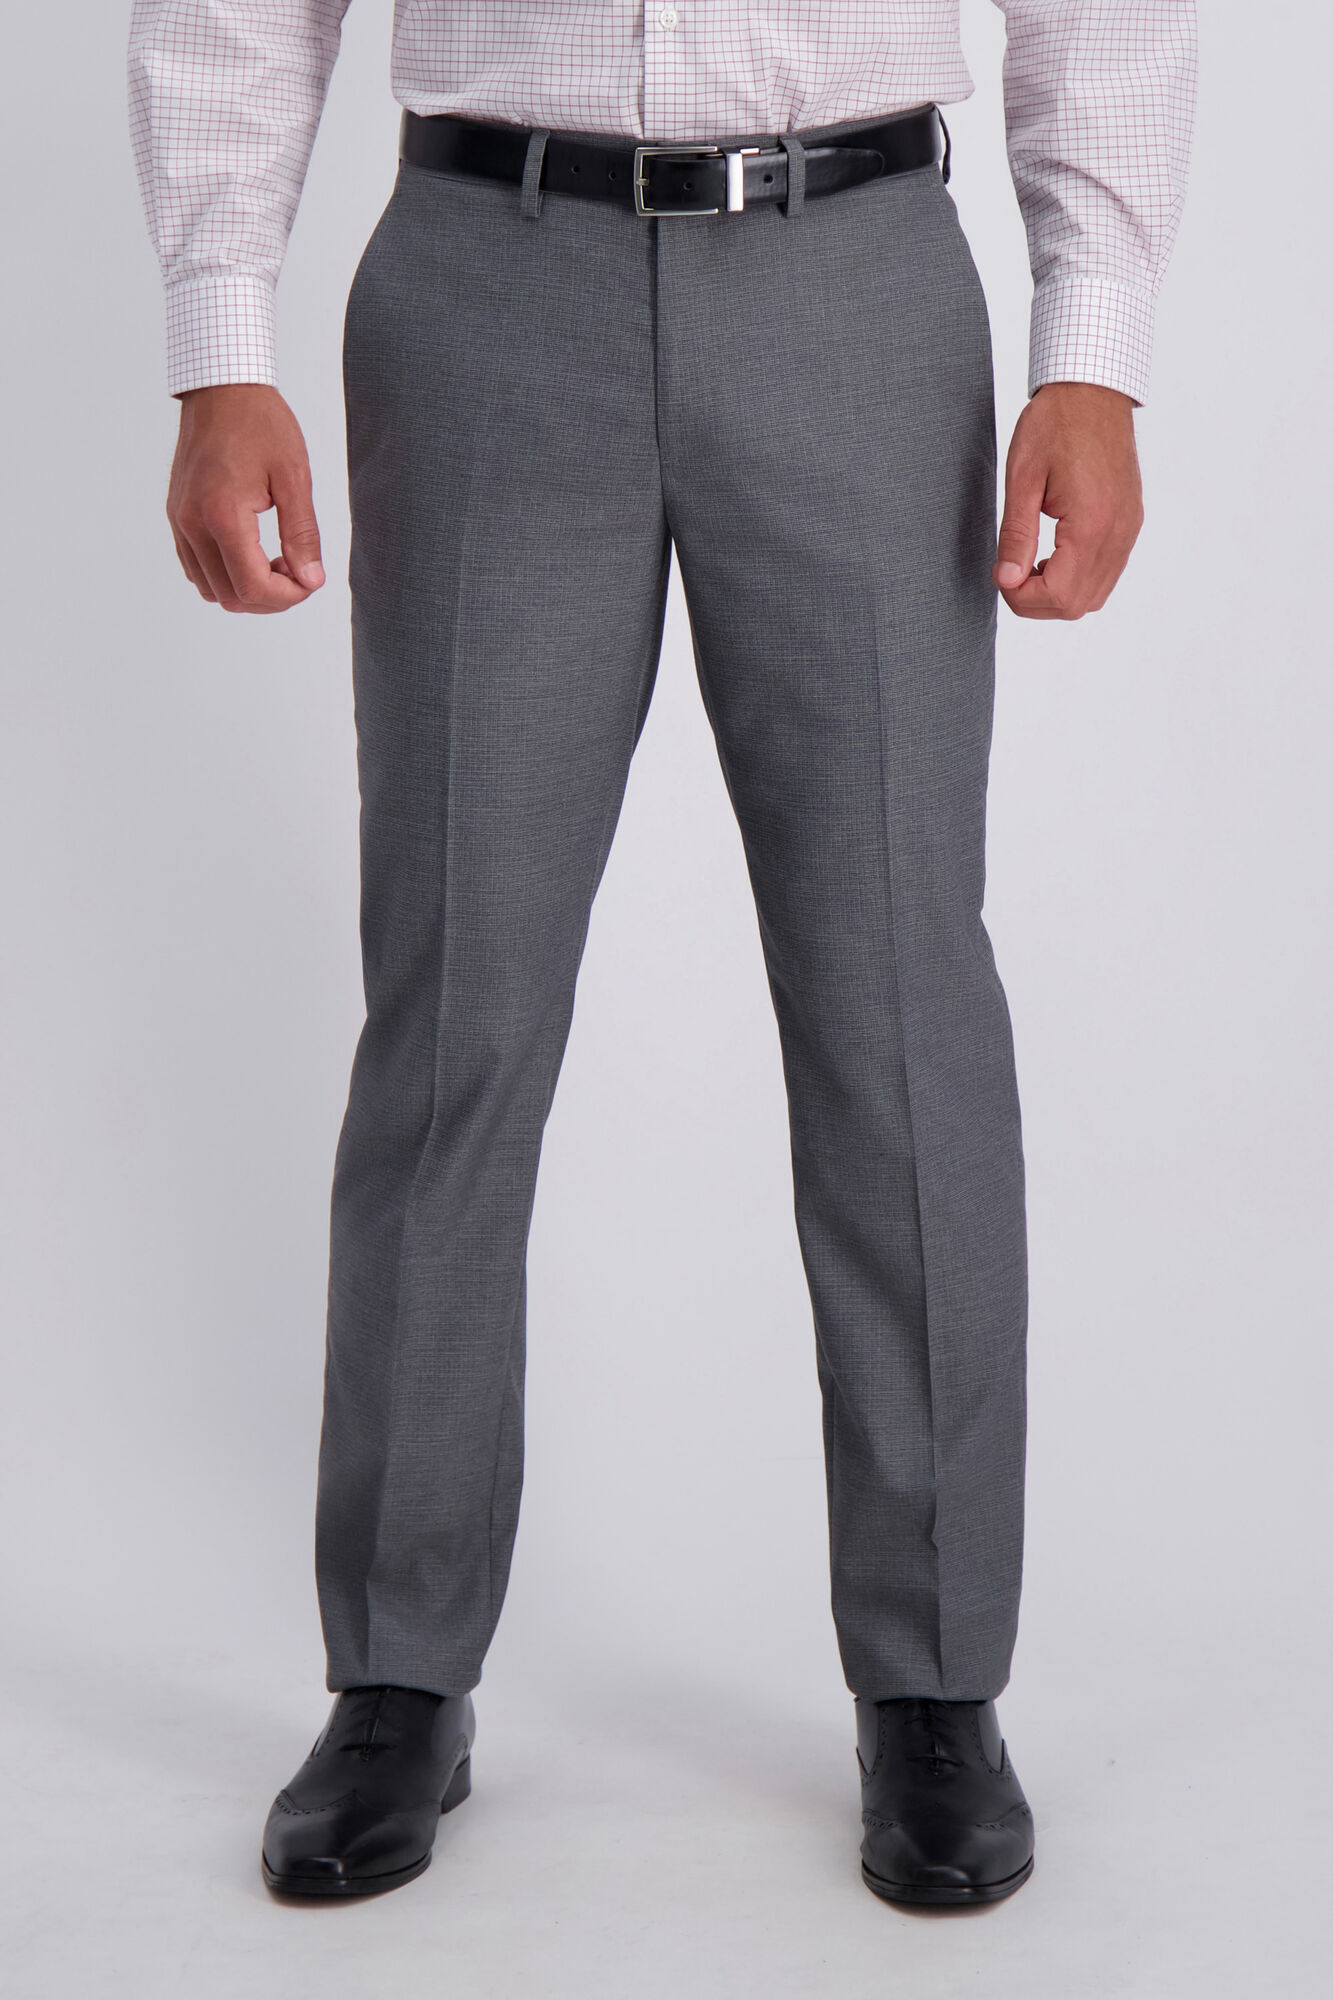 J.M. Haggar Suit Pant - Subtle Grid Graphite (HY80250 Clothing Pants) photo